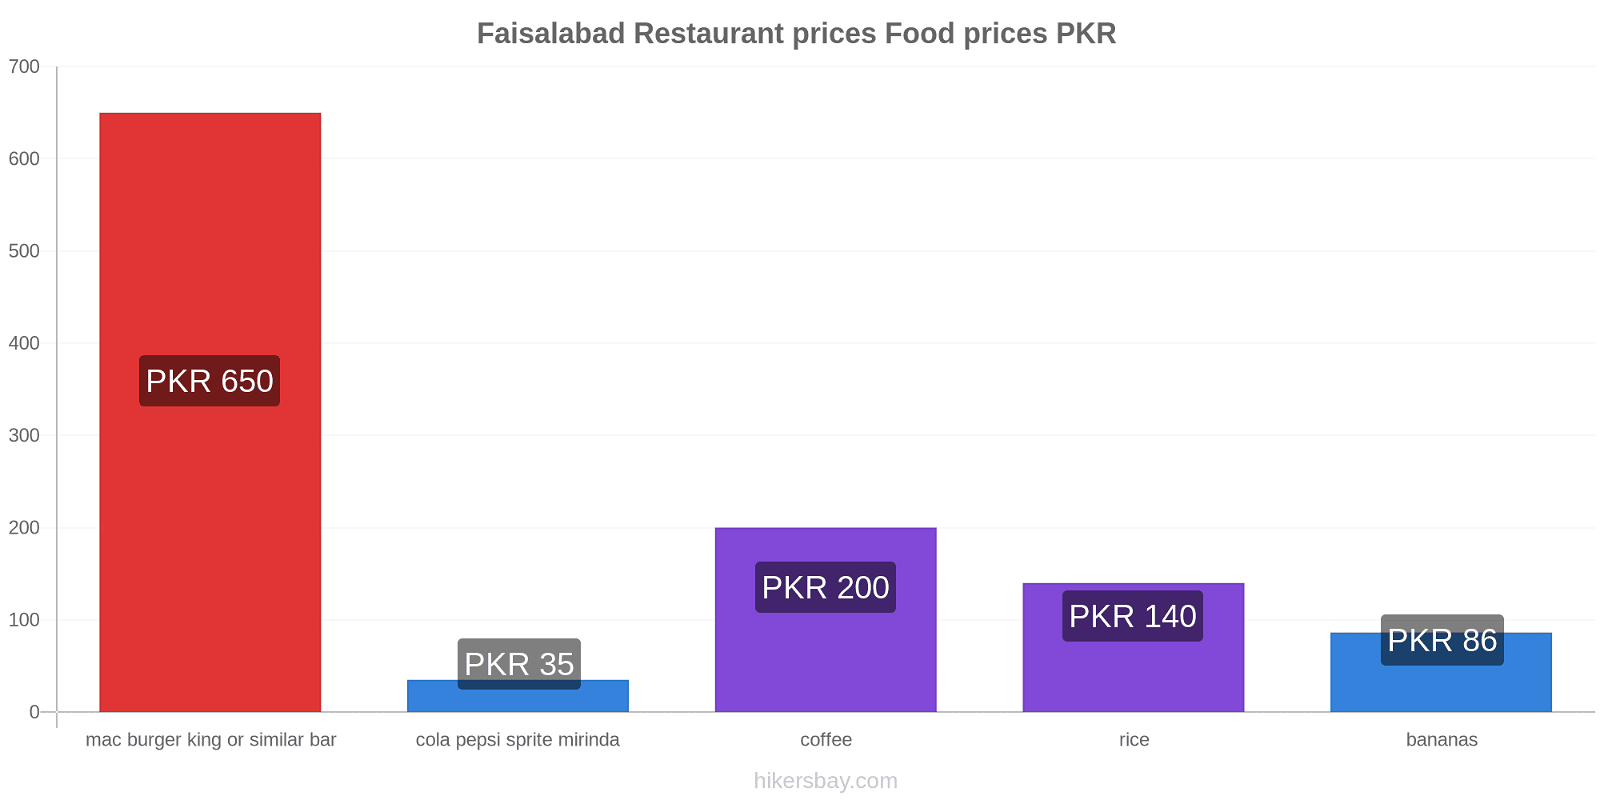 Faisalabad price changes hikersbay.com